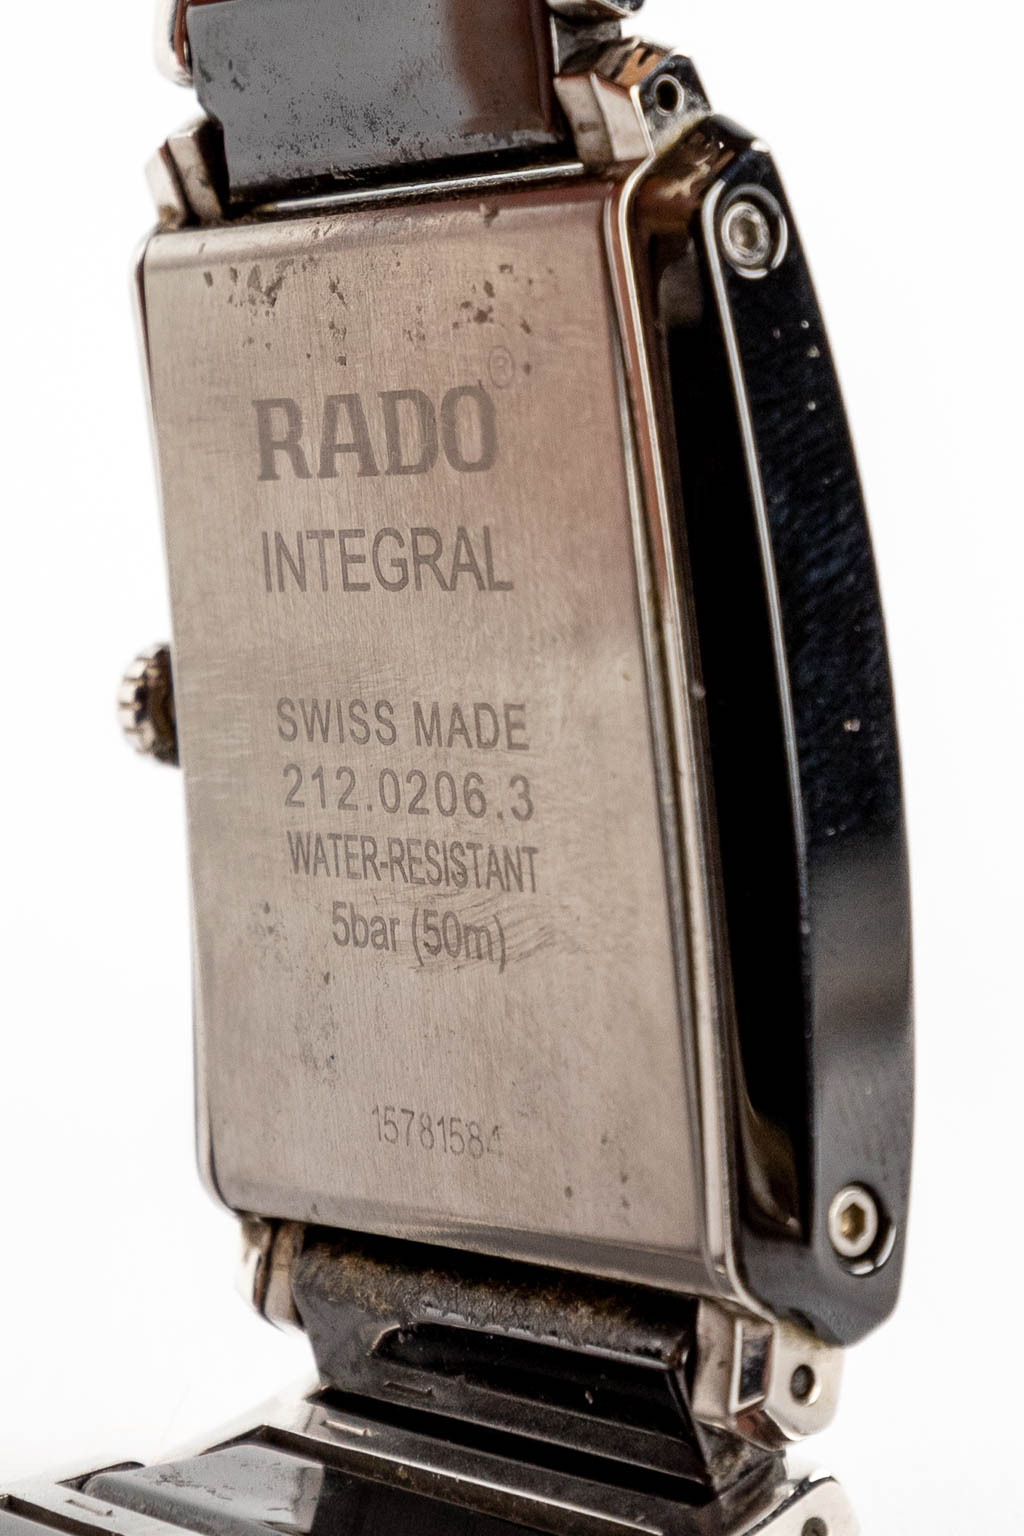 Rado Integral, een herenpolshorloge. Originele doos. (W:3,1 x H:4,1 cm)